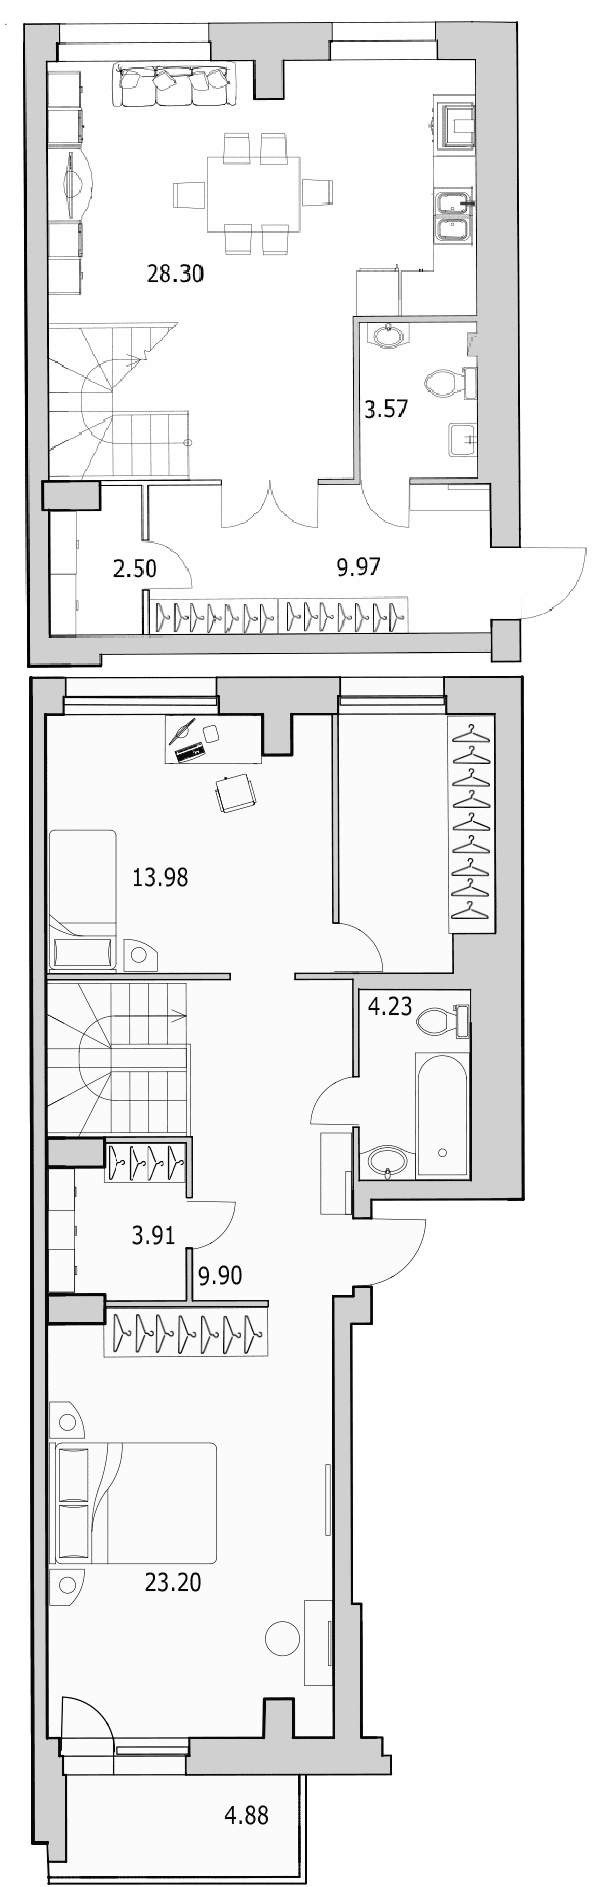 Продажа 3-комнатной (Евро) квартиры 110.28 м2, 2/27 этаж, ЖК «Байрон» - план-схема